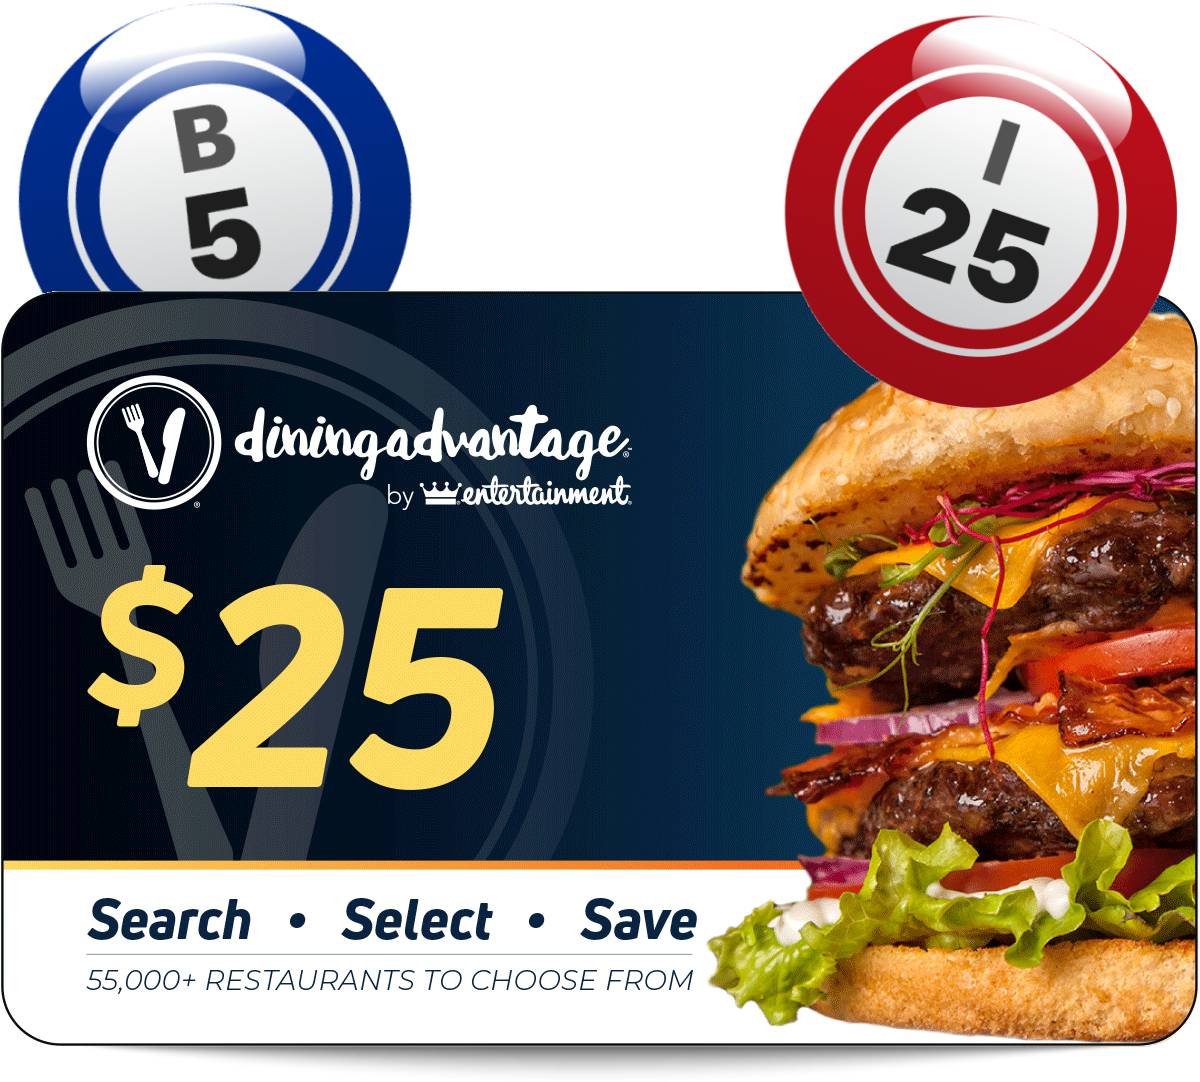 $25 Dining Advantage promotional voucher